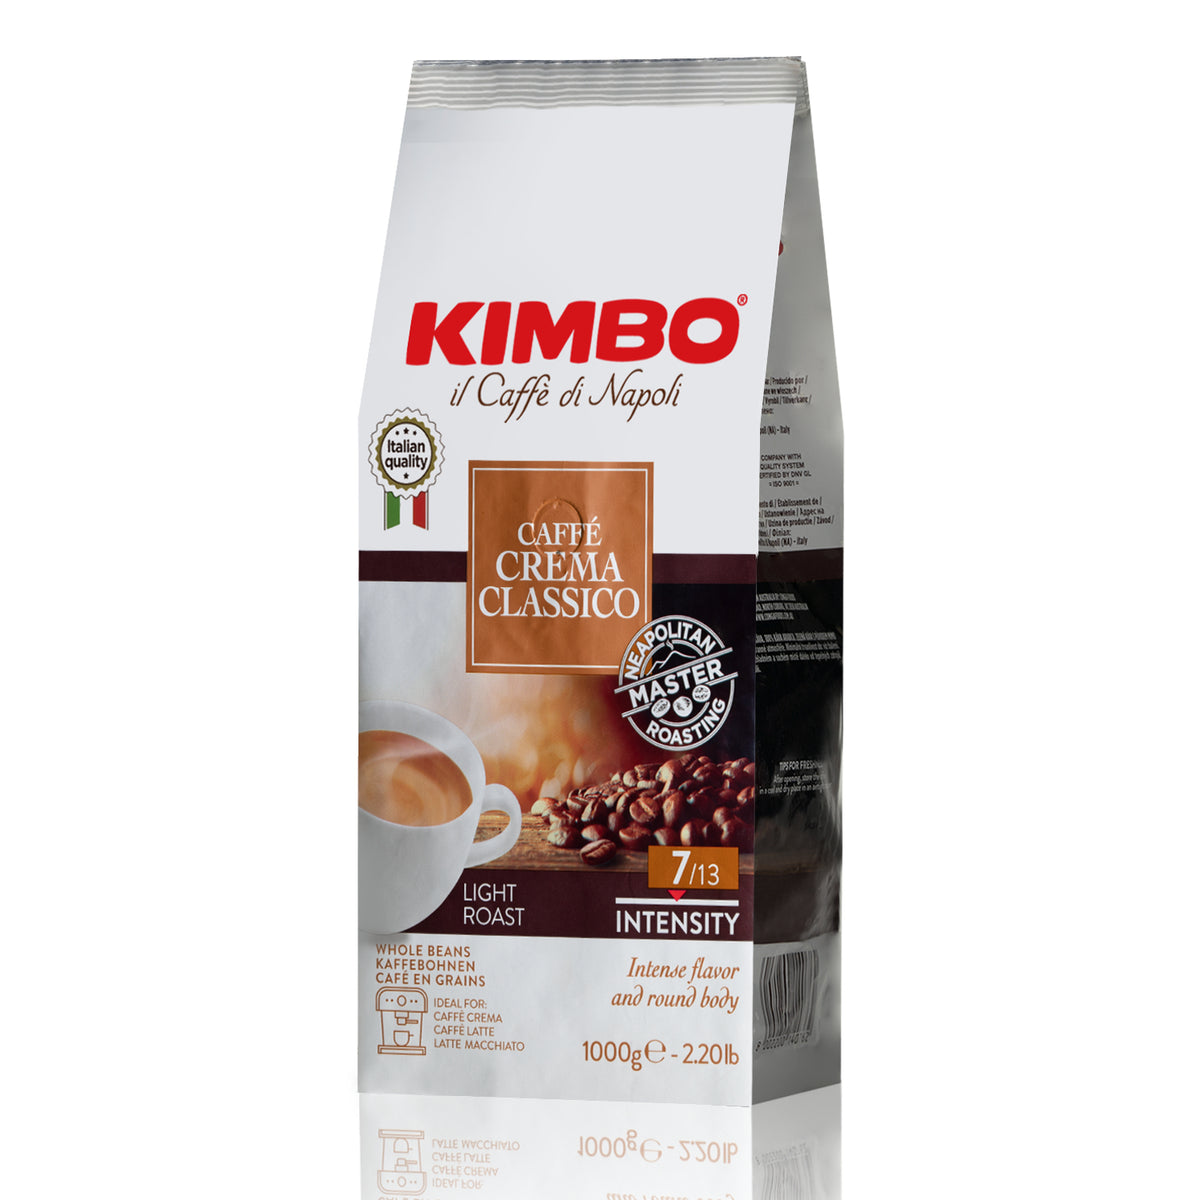 Kimbo il Caffé di Napoli – Whole Latte Love